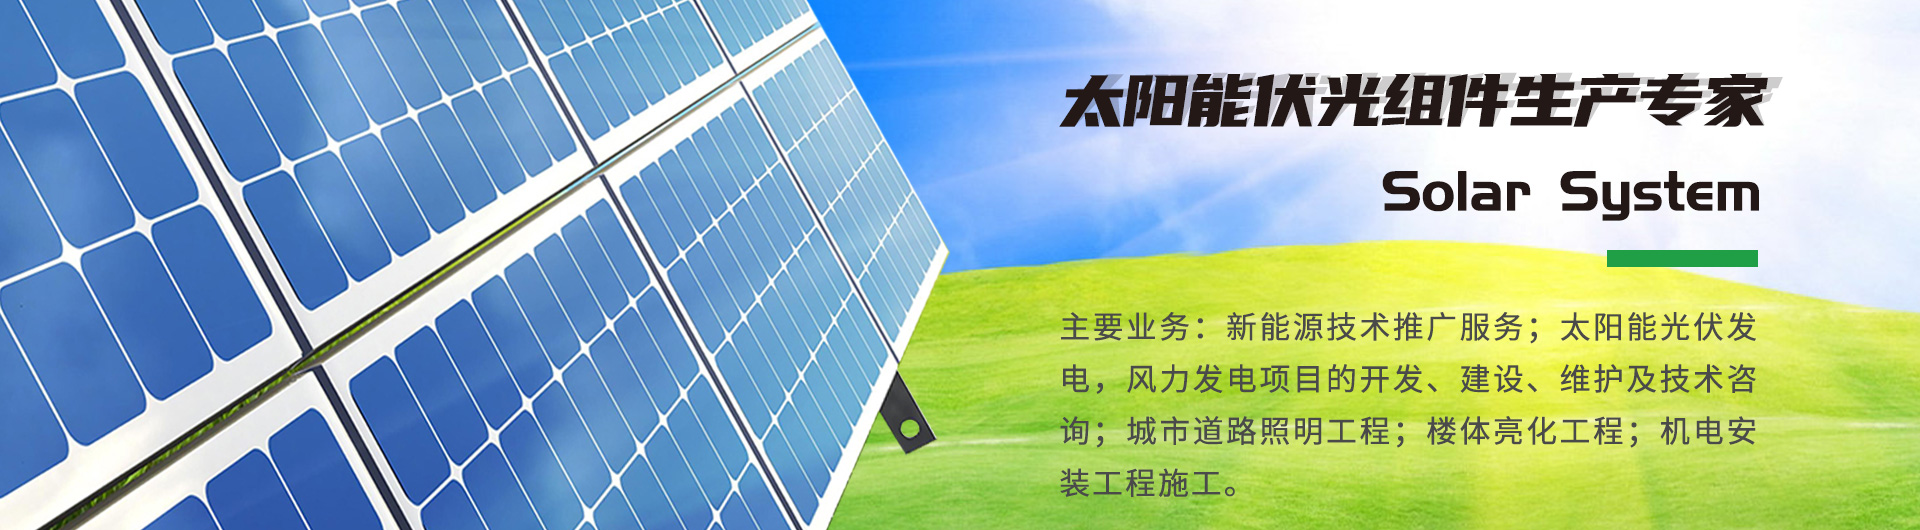 新疆太阳能发电,新疆太阳能路灯,新疆太阳能电池板